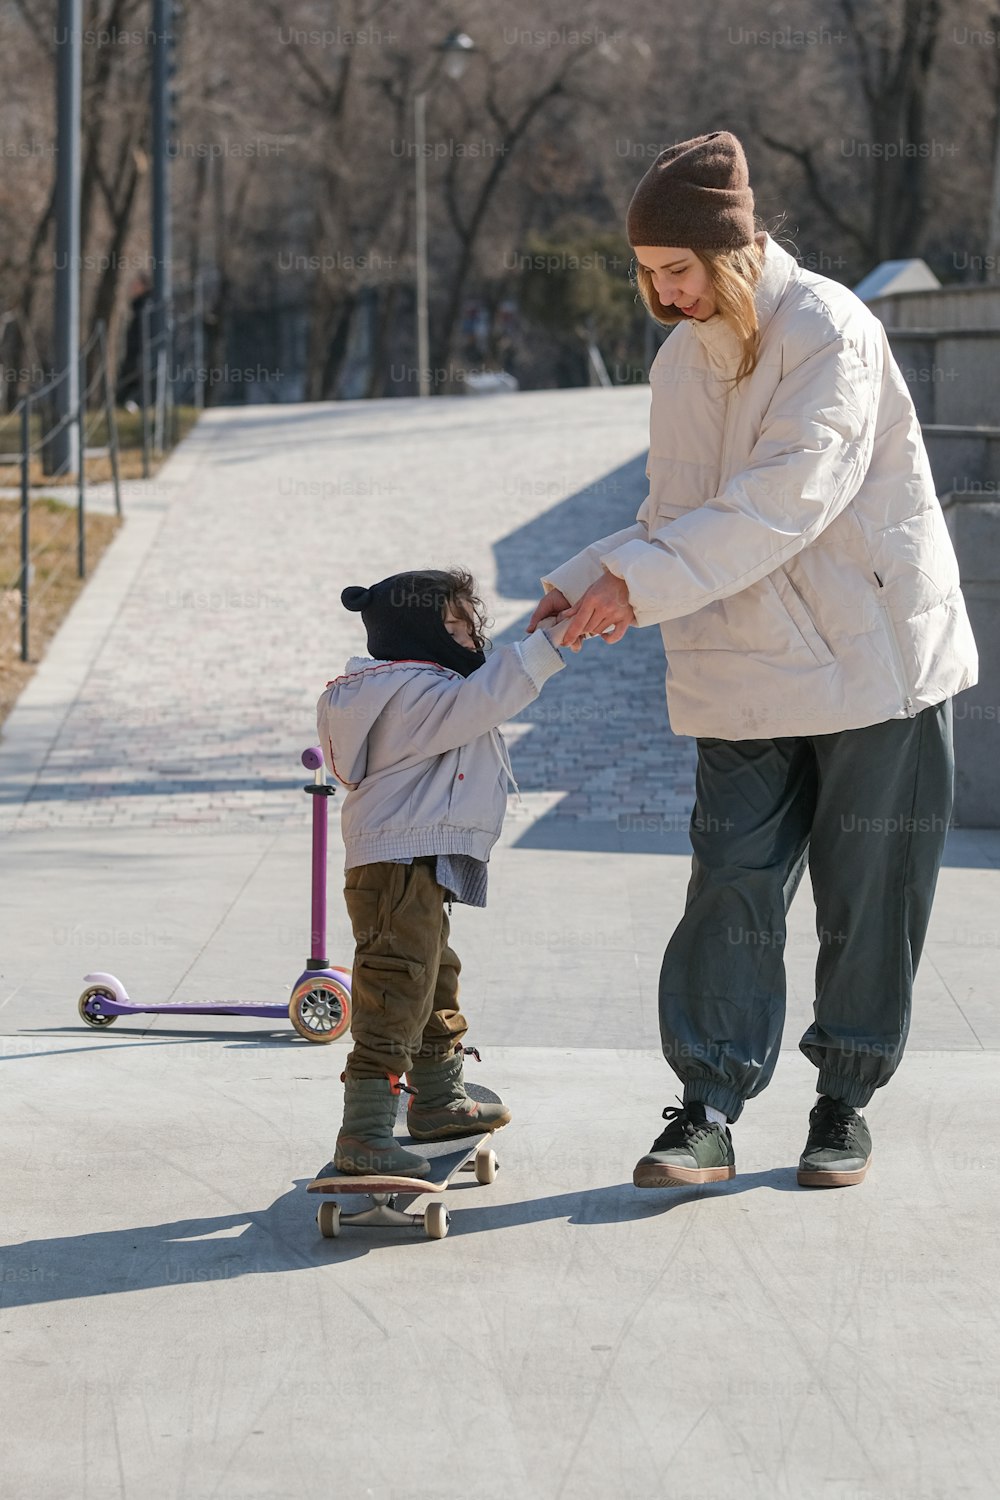 어린 아이에게 스케이트보드 타는 법을 가르치는 남자